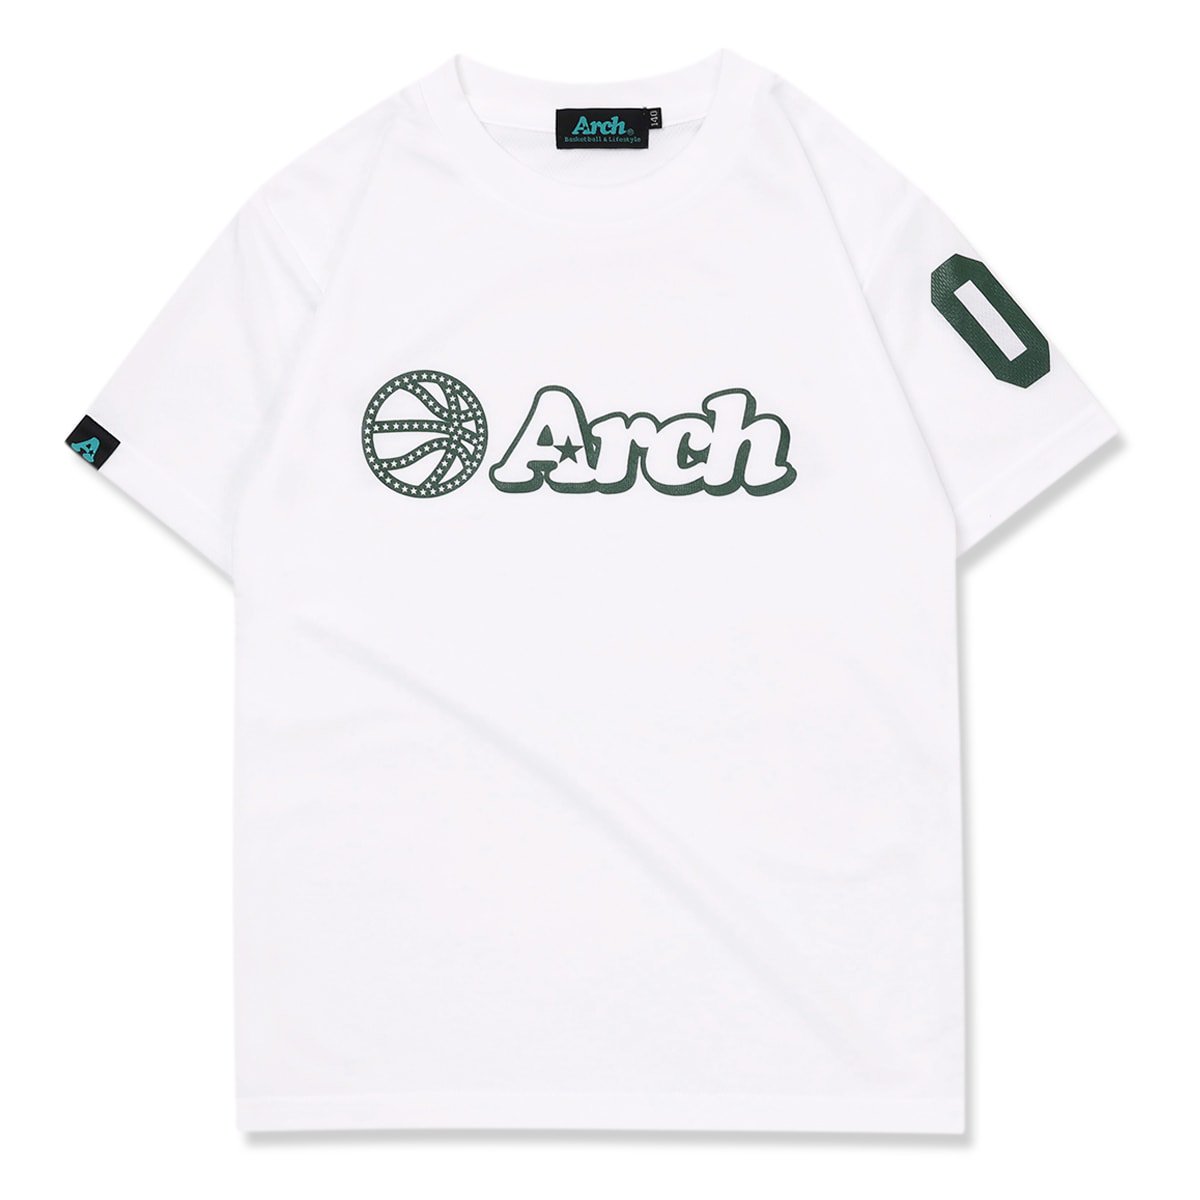 バスケ アーチ ボールロゴ Tシャツ キッズ ホワイト/ダークグリーン